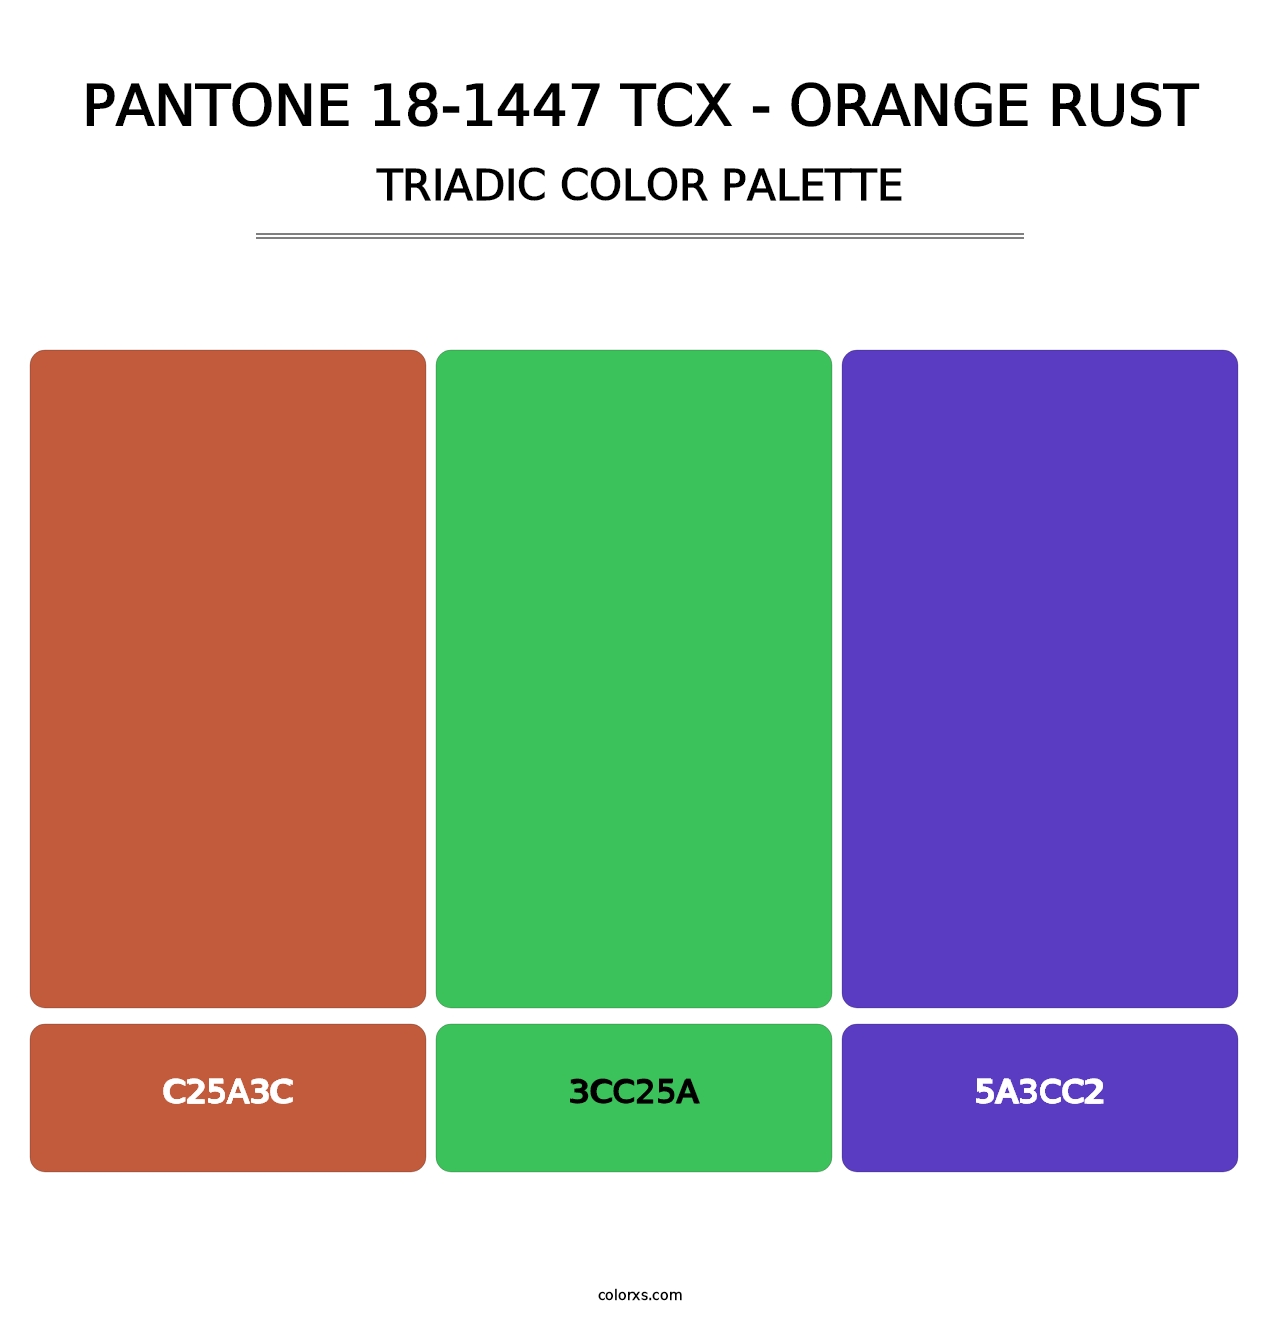 PANTONE 18-1447 TCX - Orange Rust - Triadic Color Palette